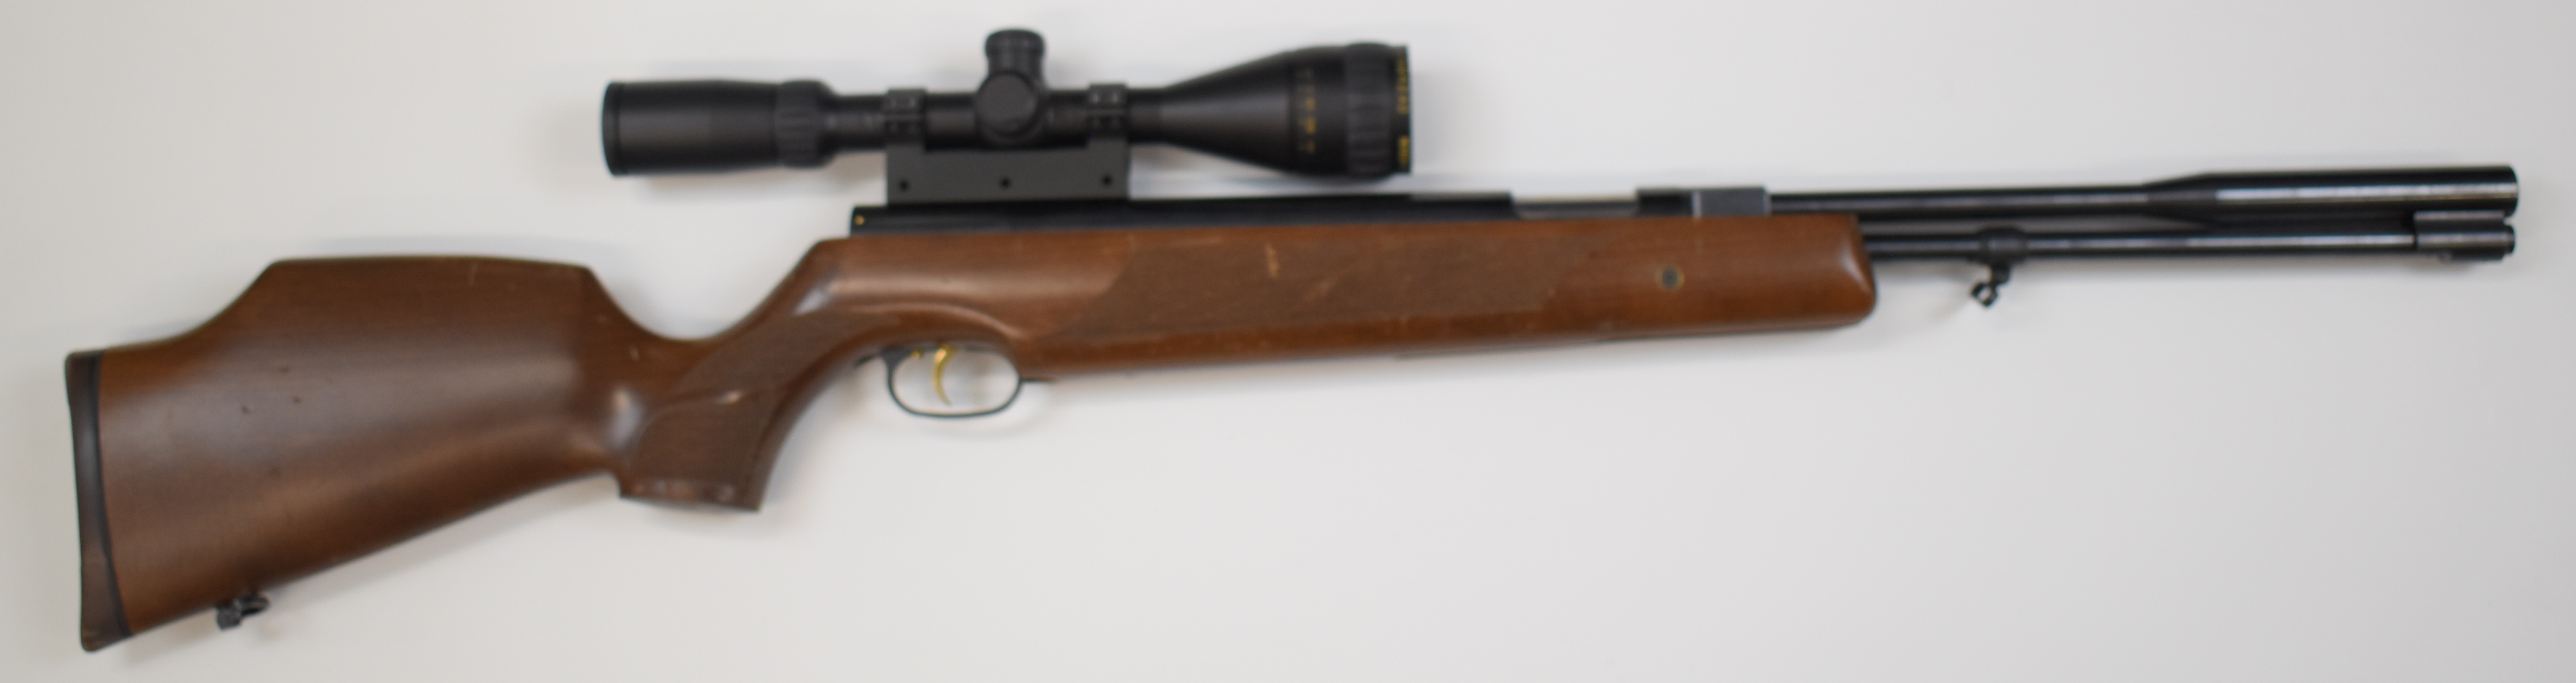 Weihrauch HW97K .177 underlever air rifle with chequered semi-pistol grip, raised cheek piece, sling - Image 2 of 10